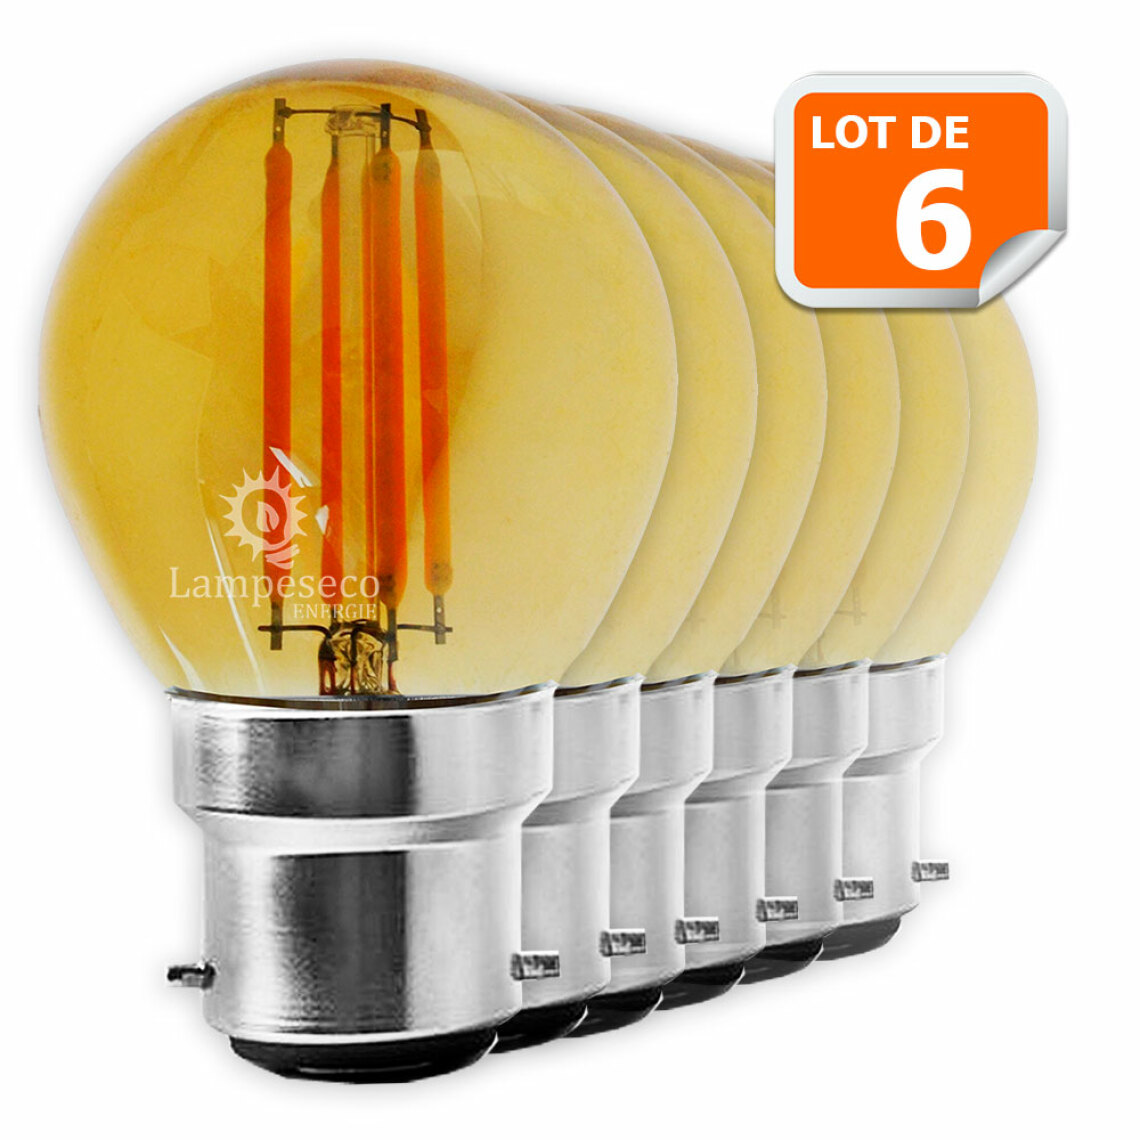 Lampesecoenergie - Lot de 6 Ampoules Led Filament forme G45 4 Watt (éq 42 watts) Culot B22 - Ampoules LED